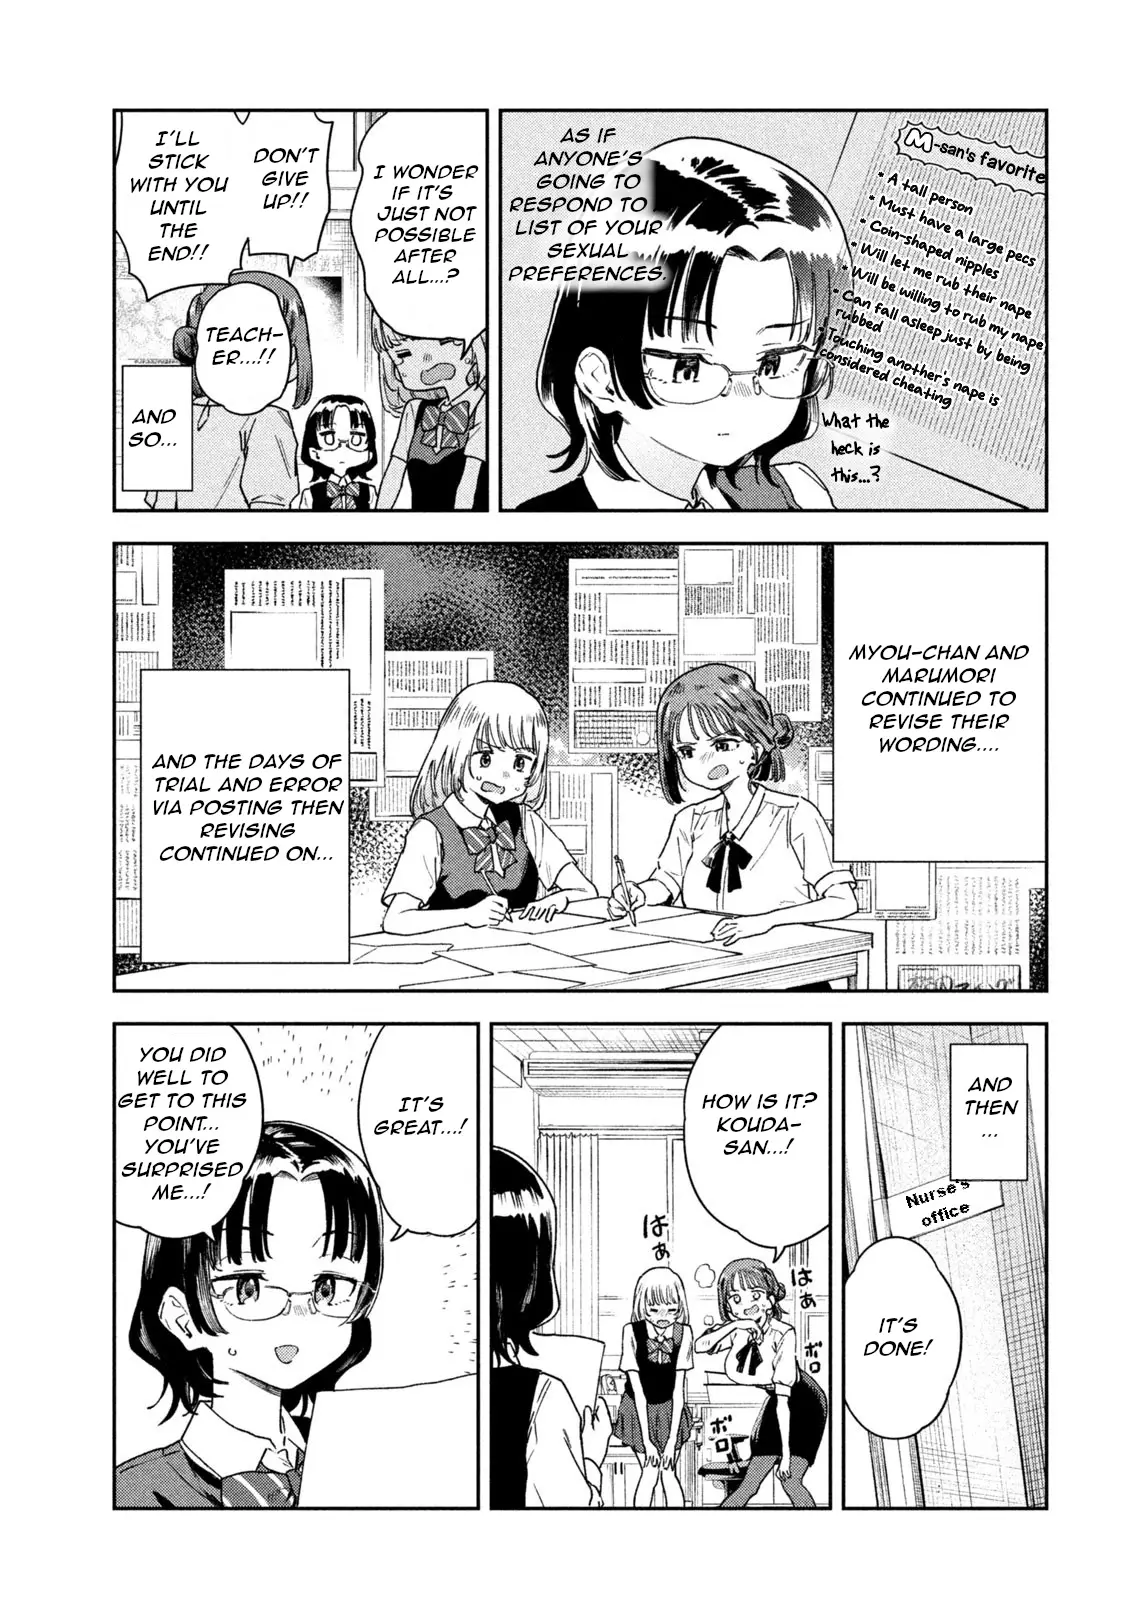 Miyo-Chan Sensei Said So - 8 page 9-4c10a4bc